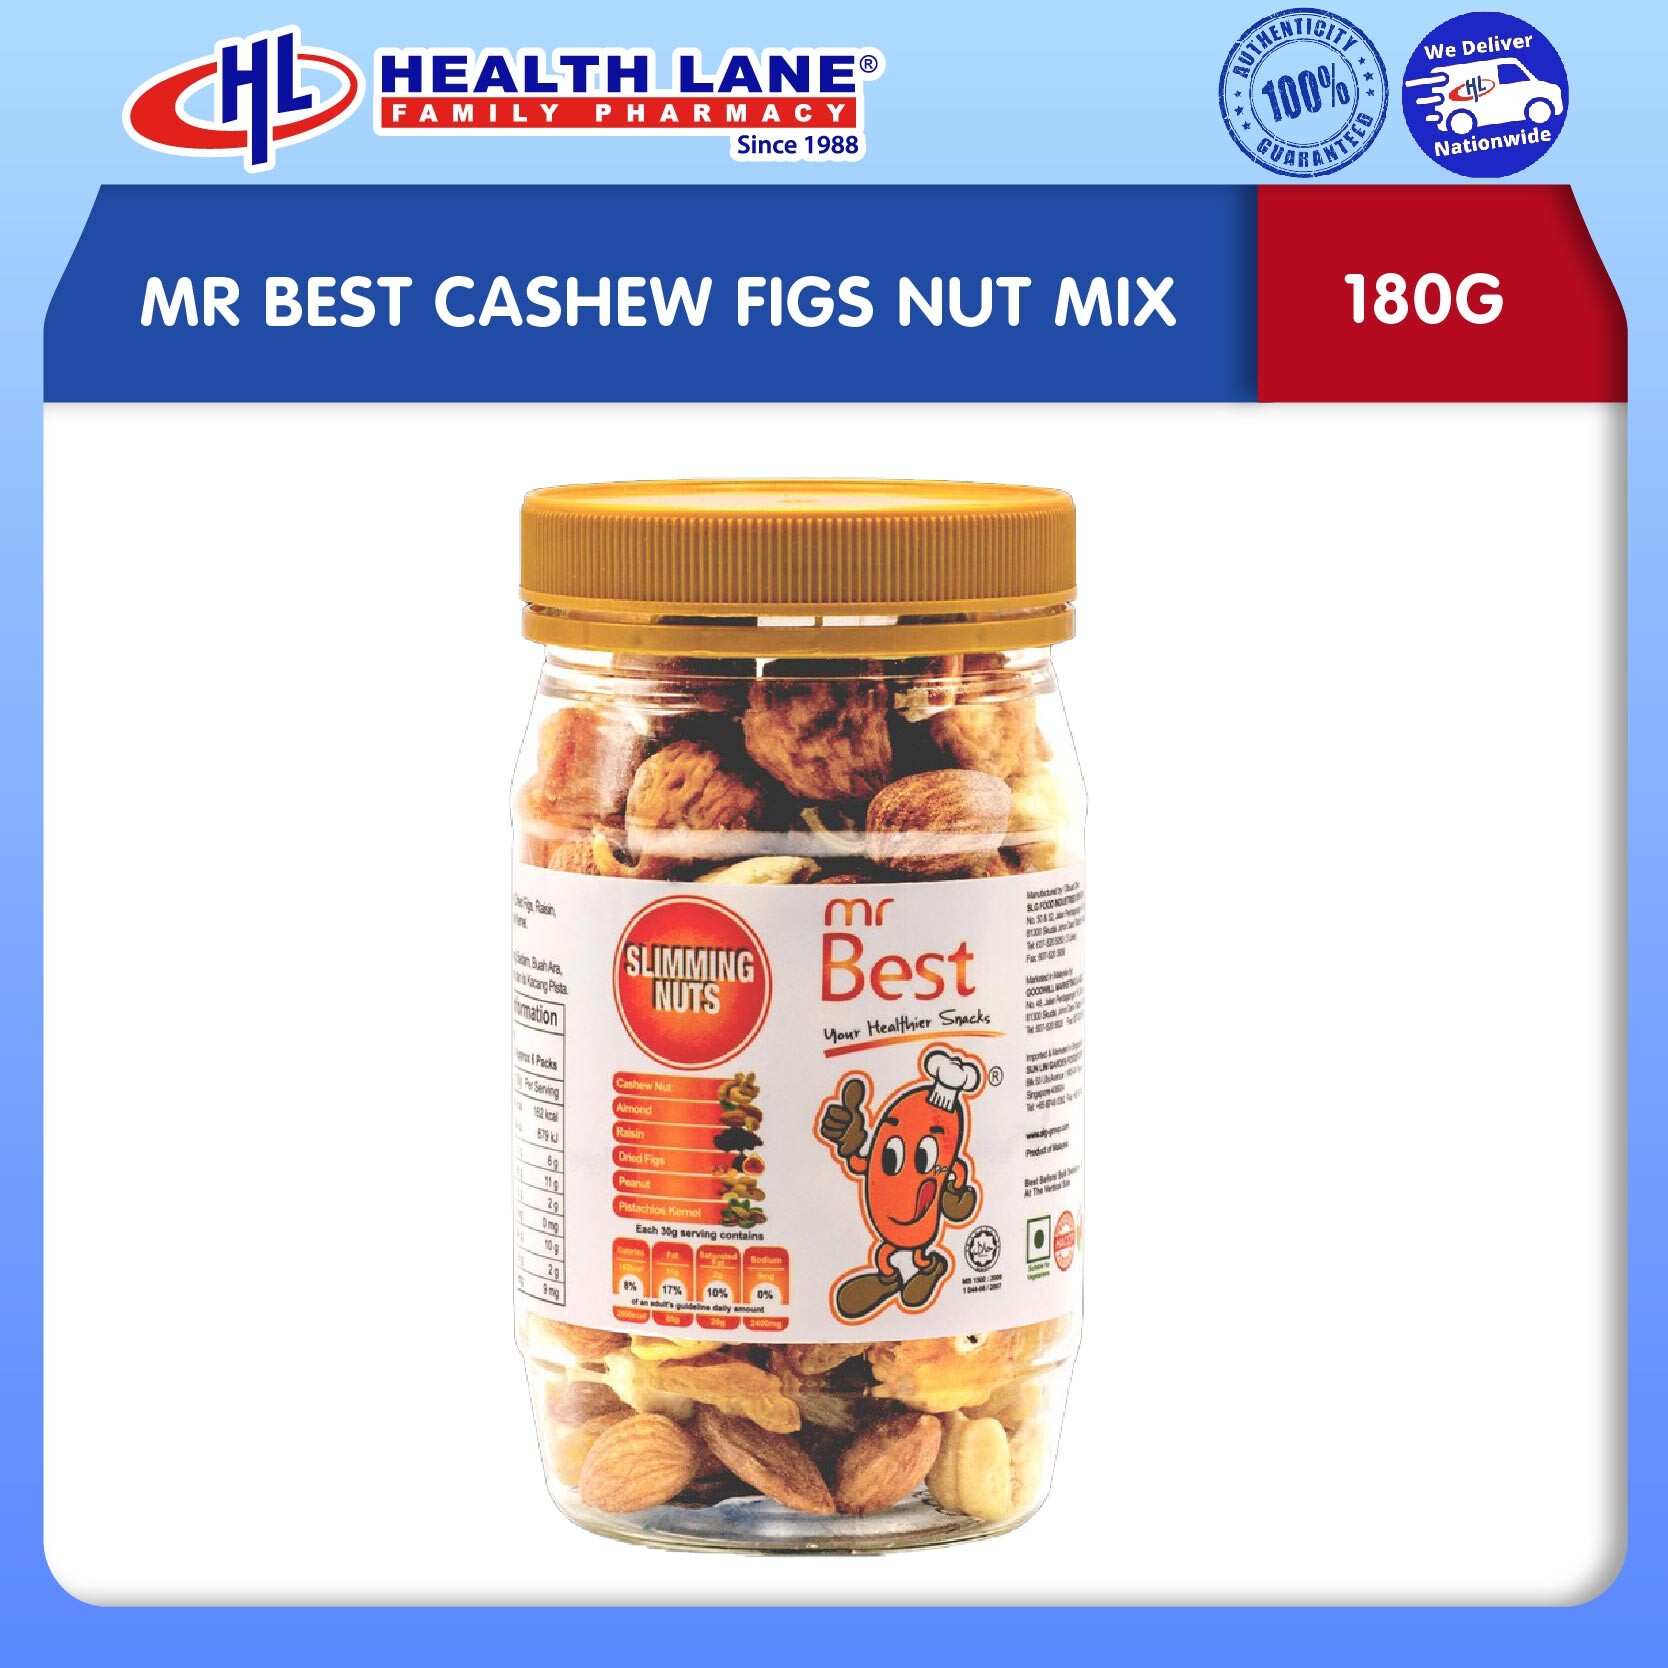 MR BEST CASHEW FIGS NUT MIX (180G)